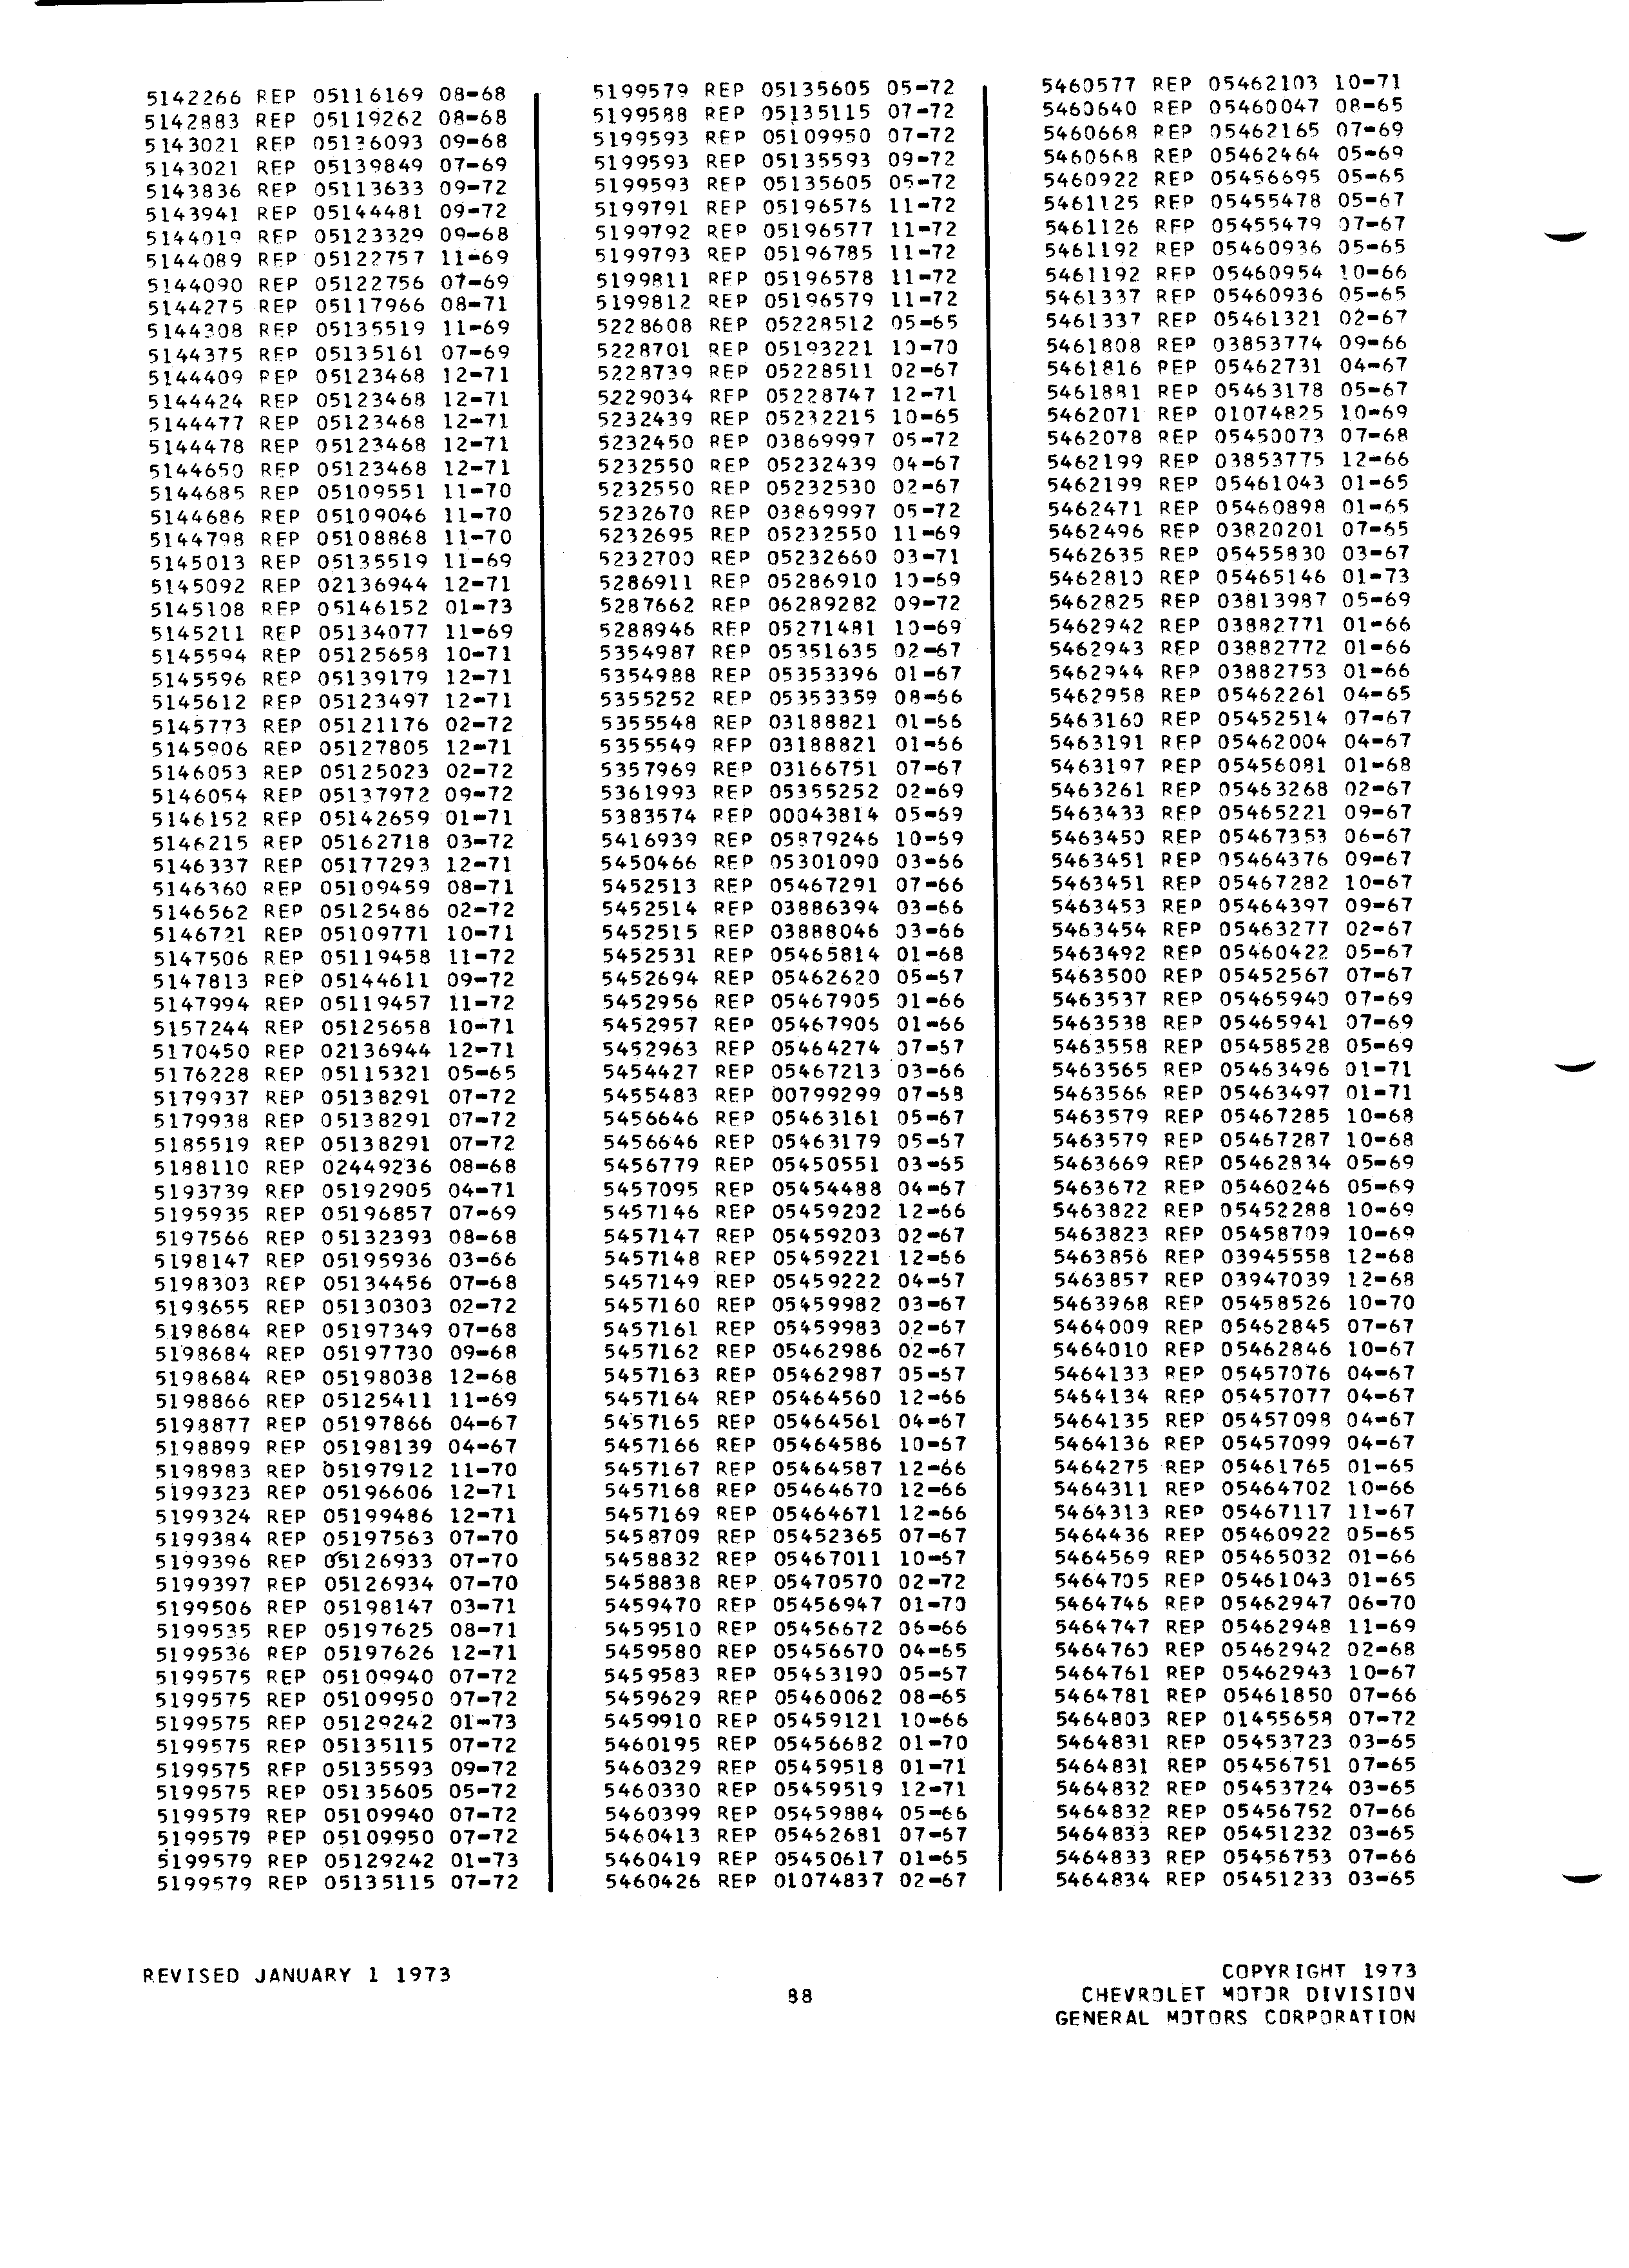 Parts History Catalog P&A 30H January 1973